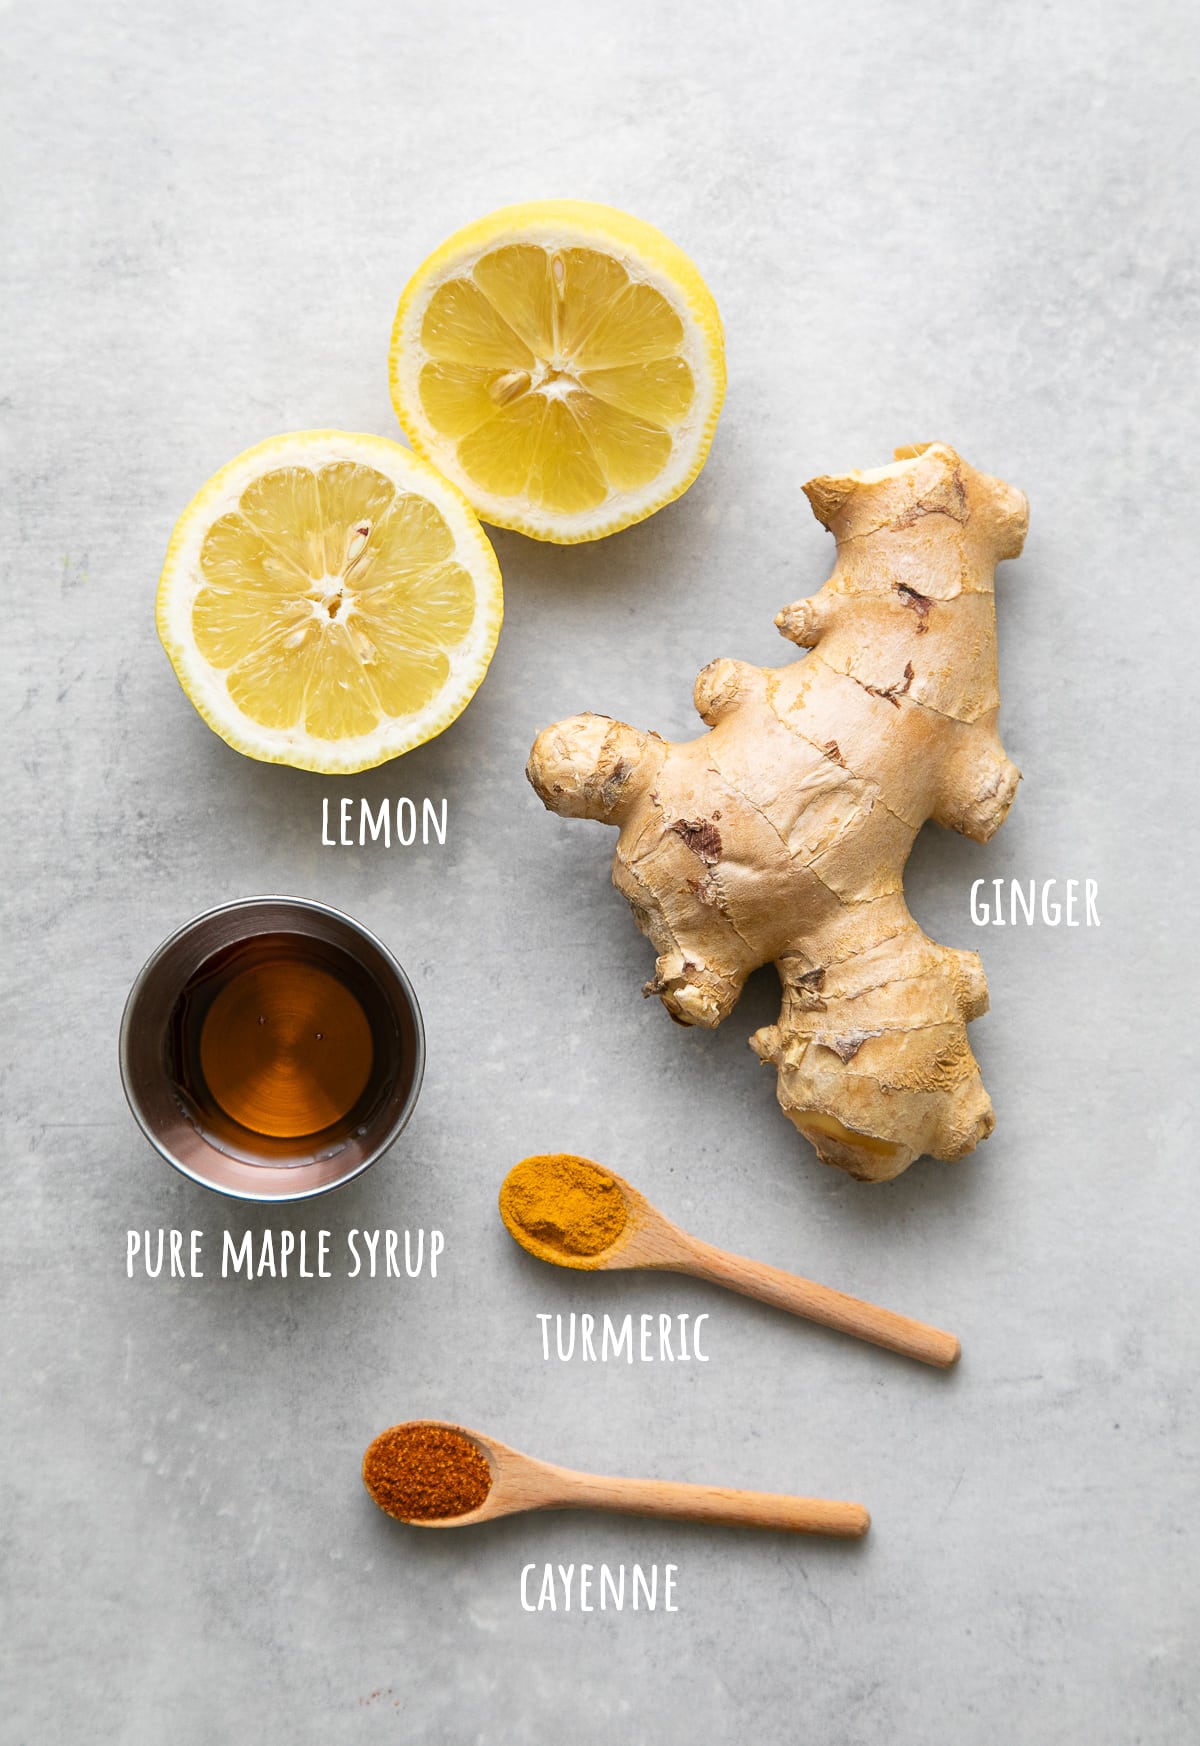 top view of ingredients used to make detox lemon ginger tea recipe.